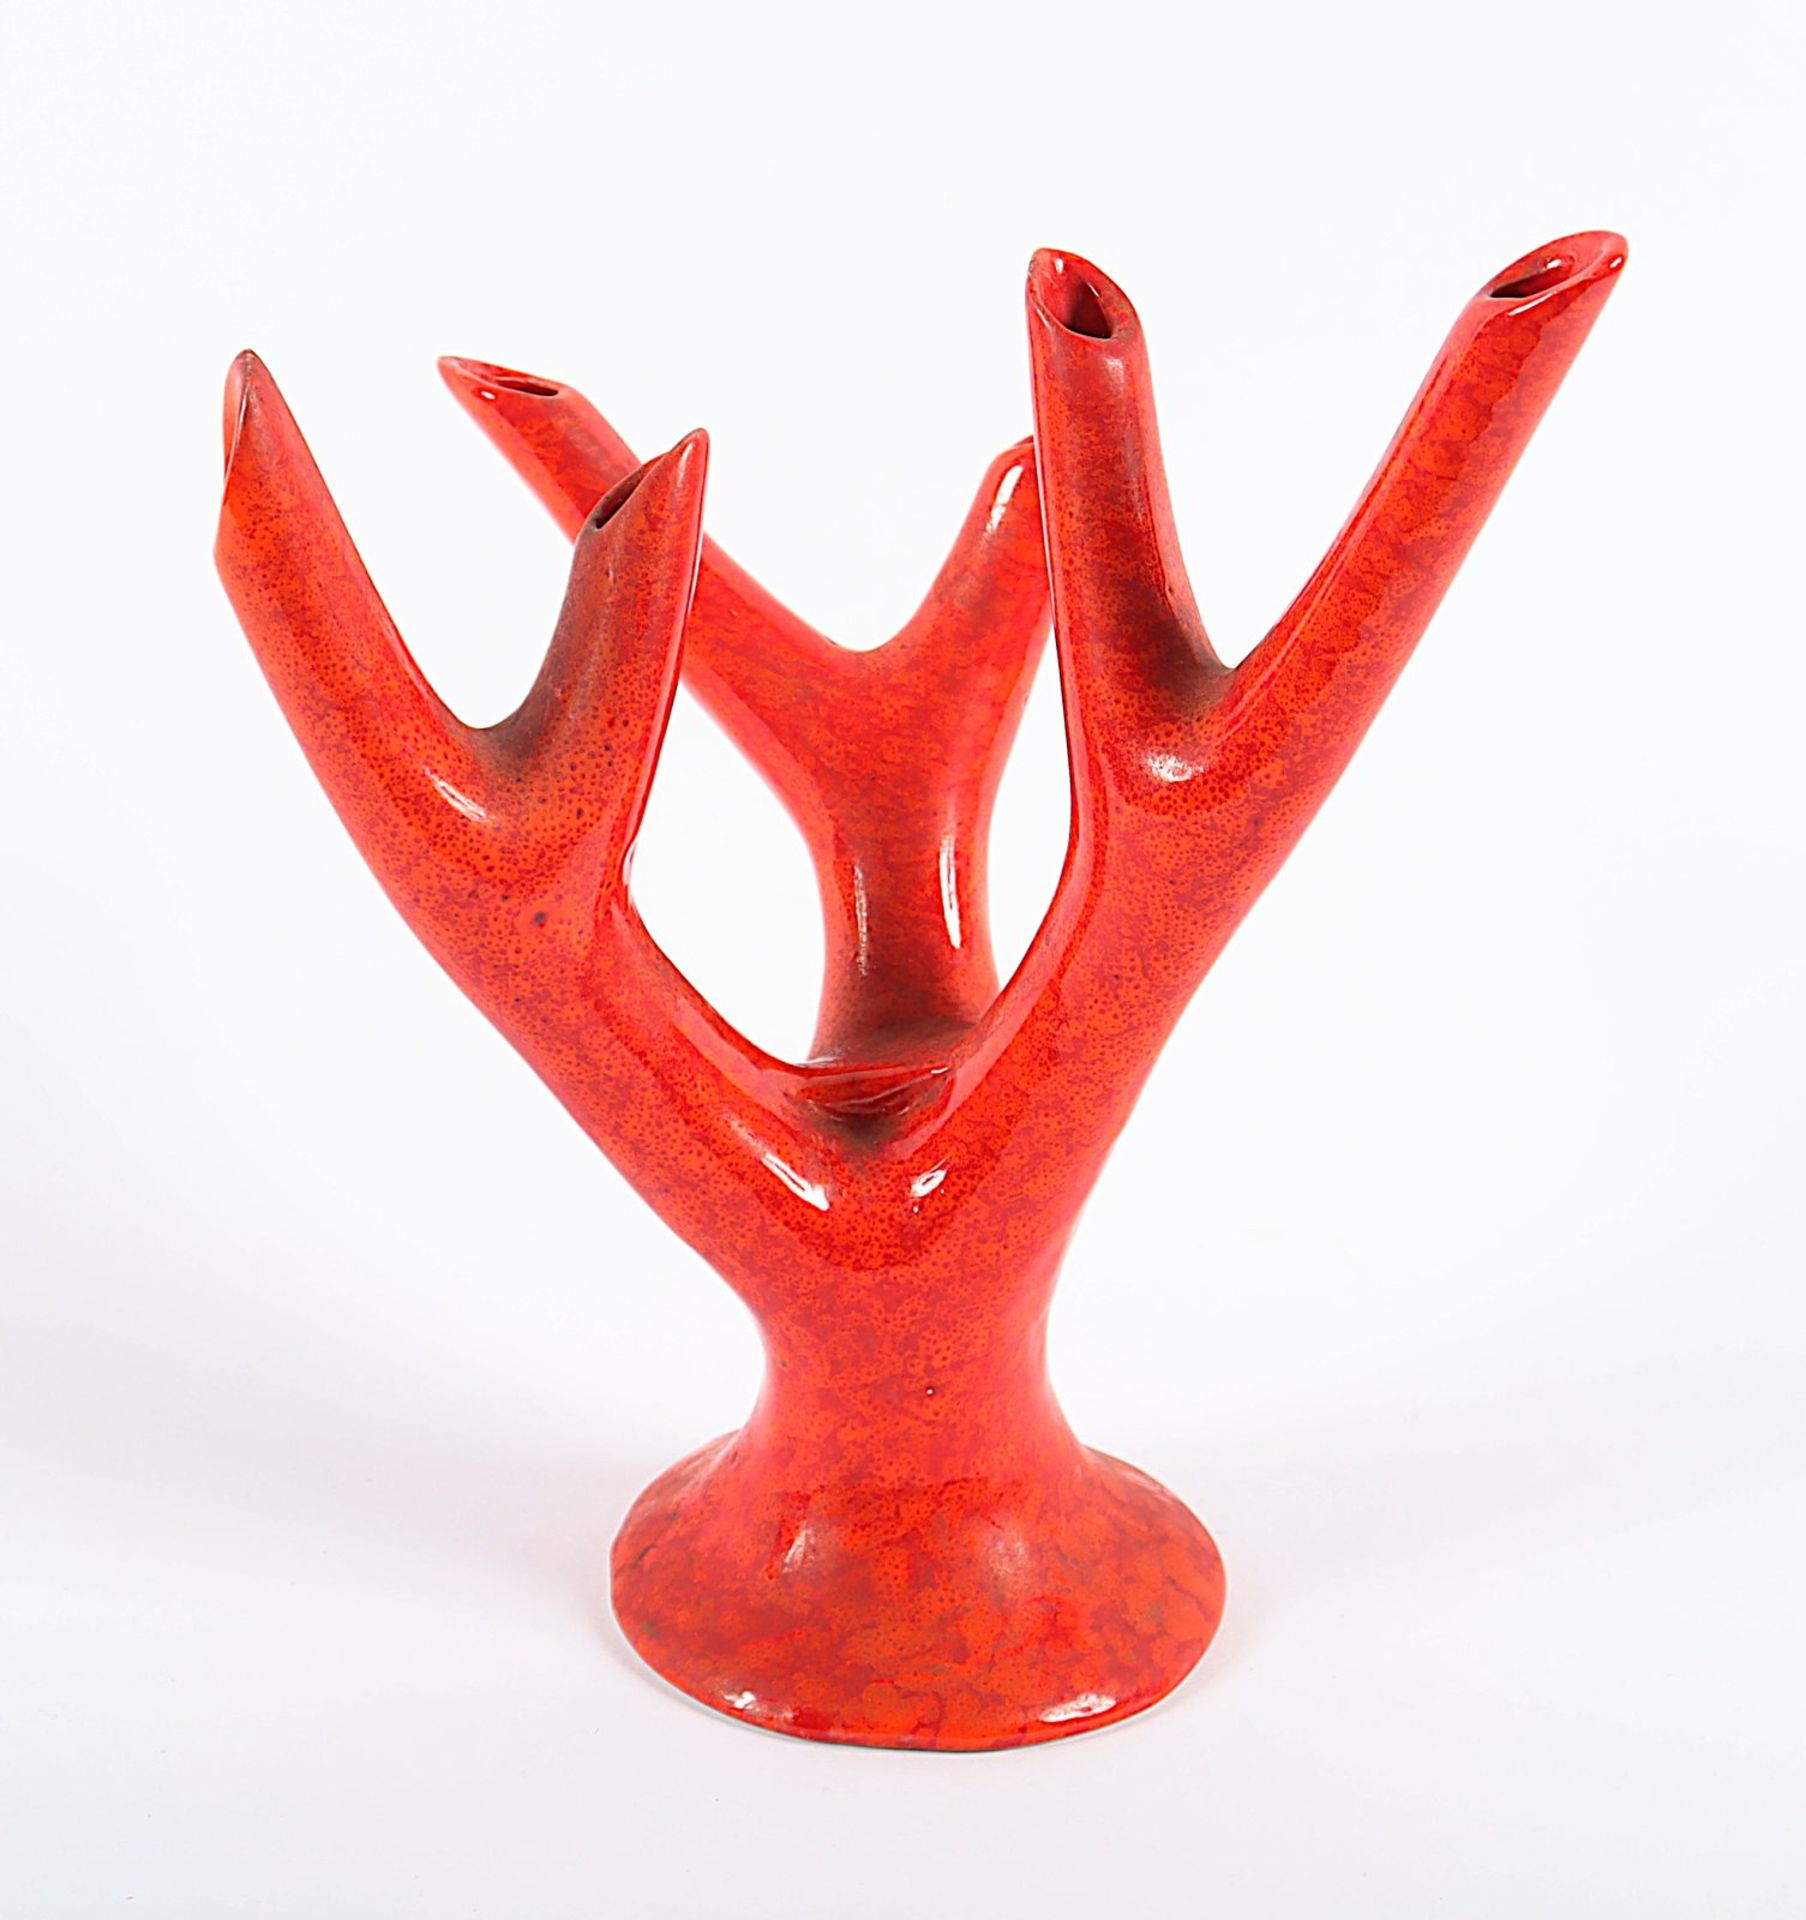 Vase "Branch", Keramik, min. best., Guido Andlovitz, Società Ceramica Italiana di Laveno, um 1950 - Bild 2 aus 3